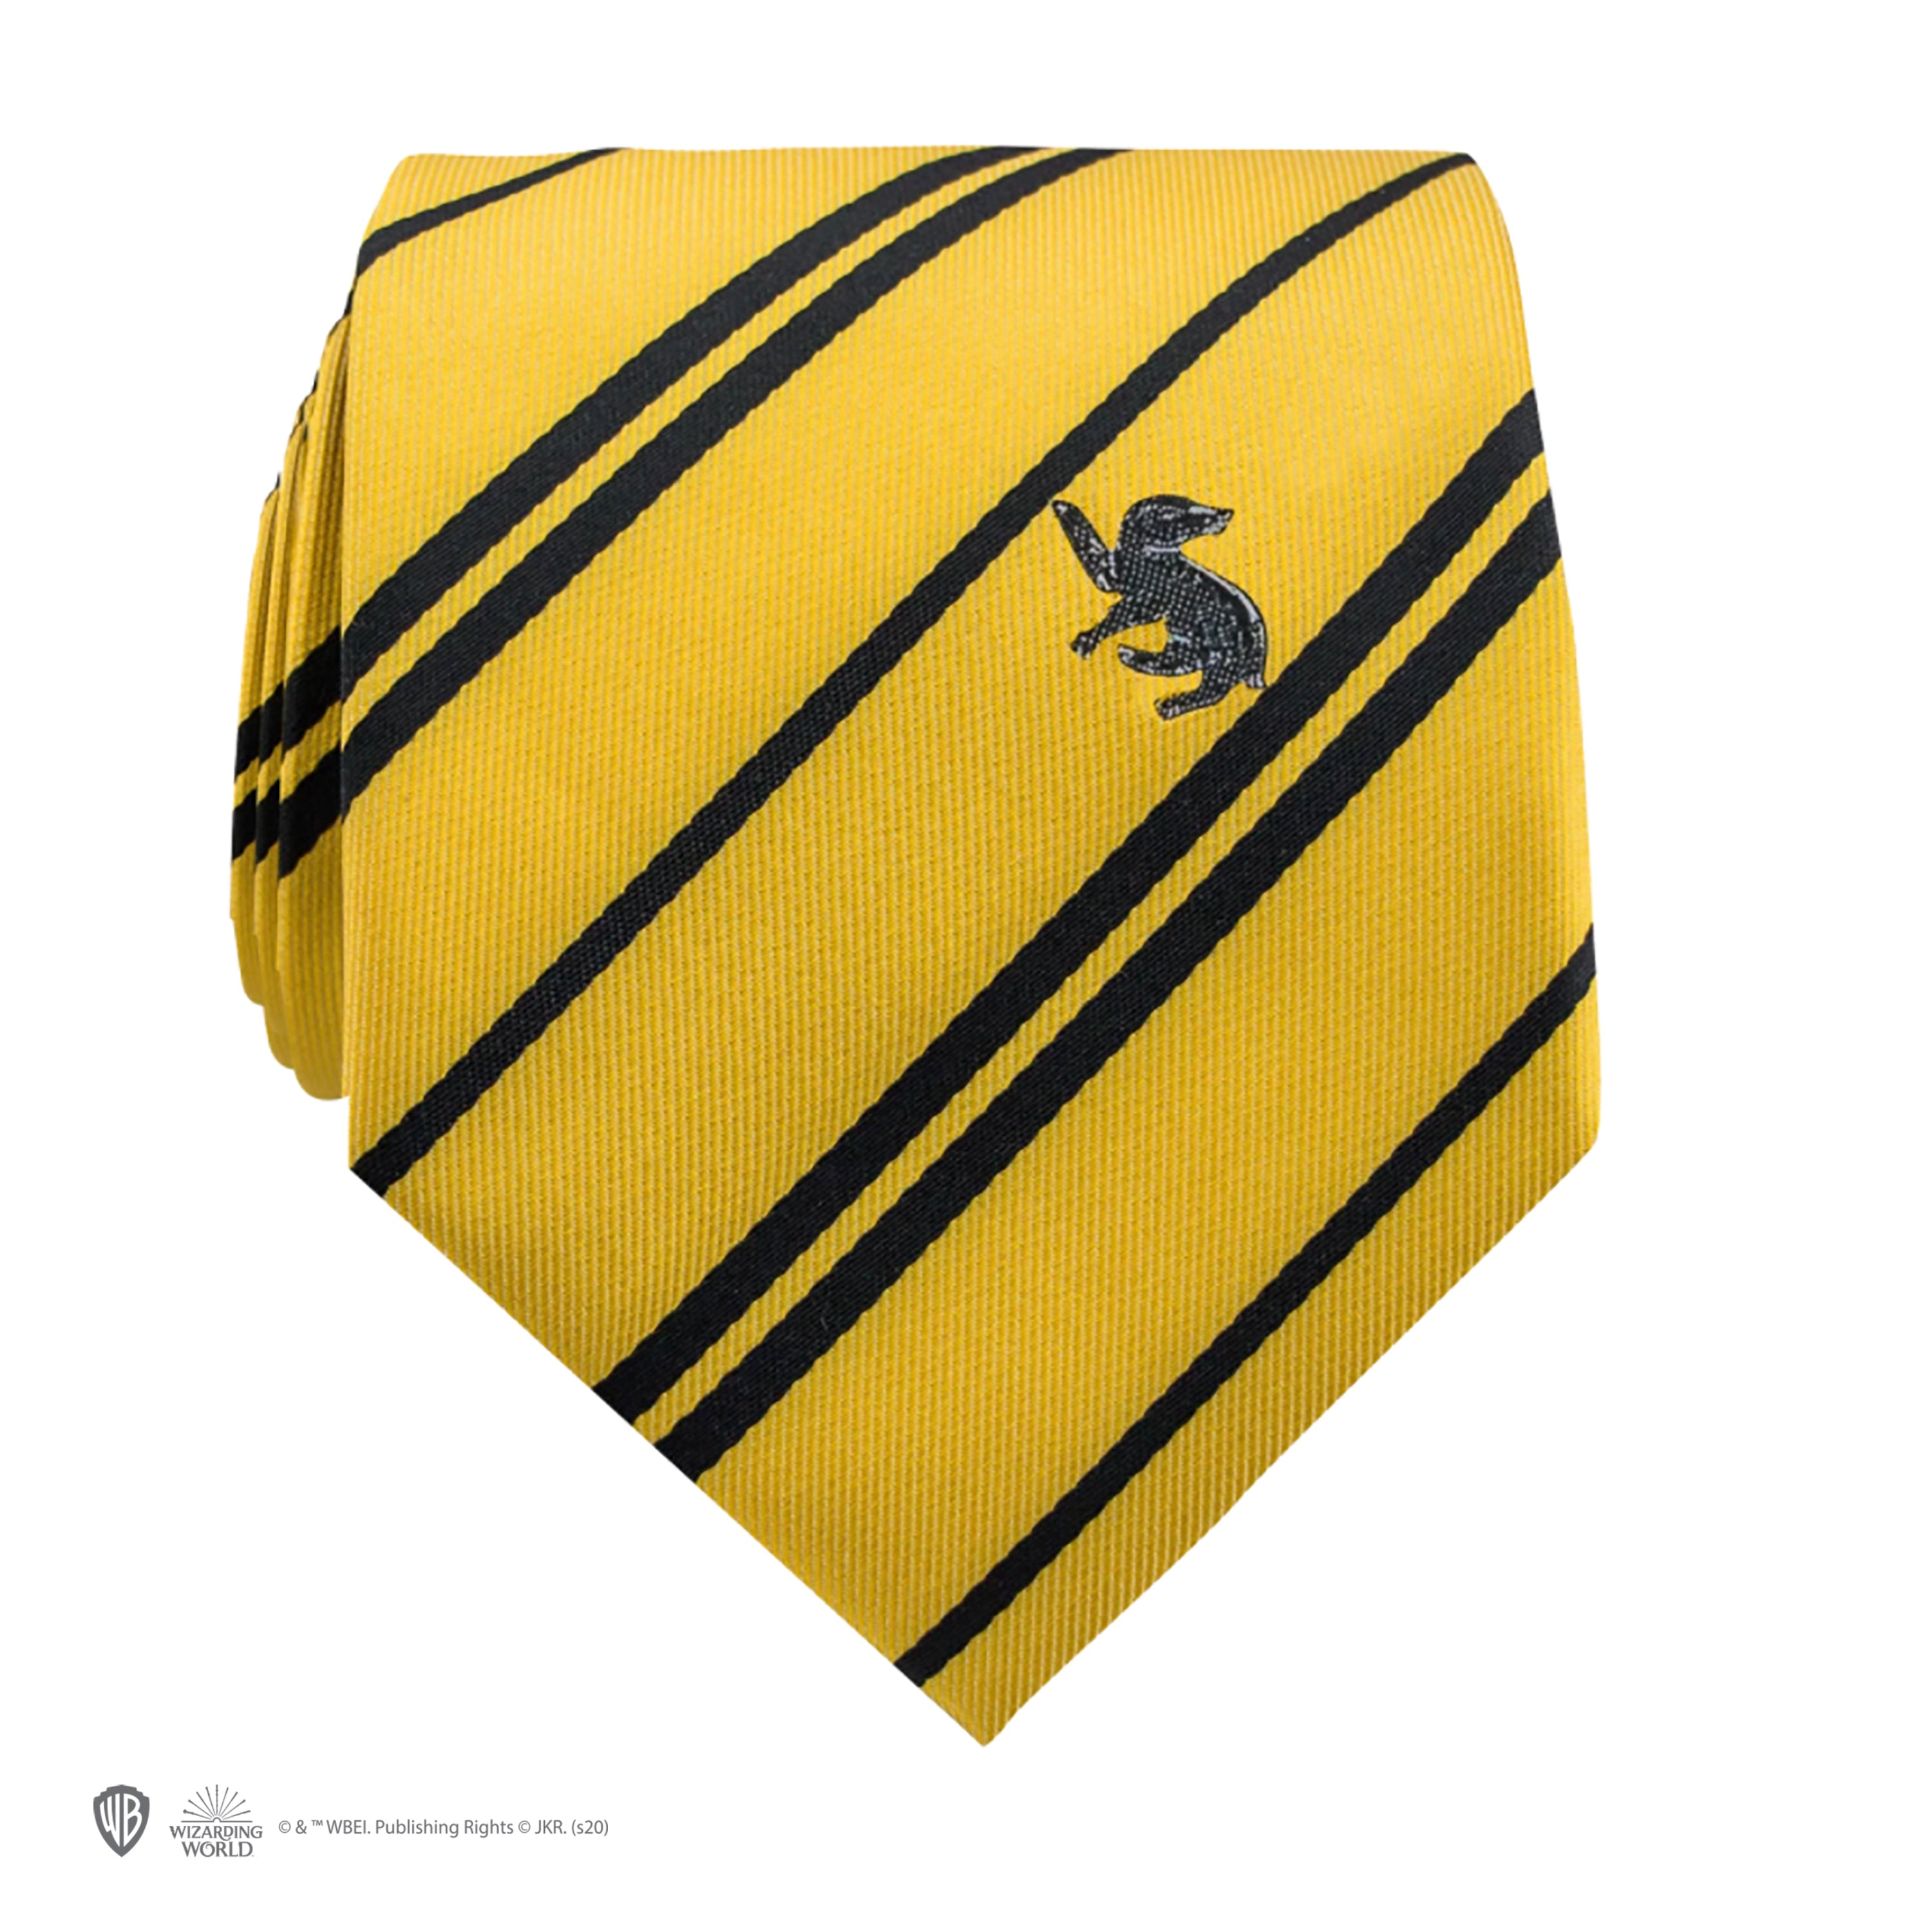 Acheter la Cravate Poufsouffle - l'Officine, boutique Harry Potter